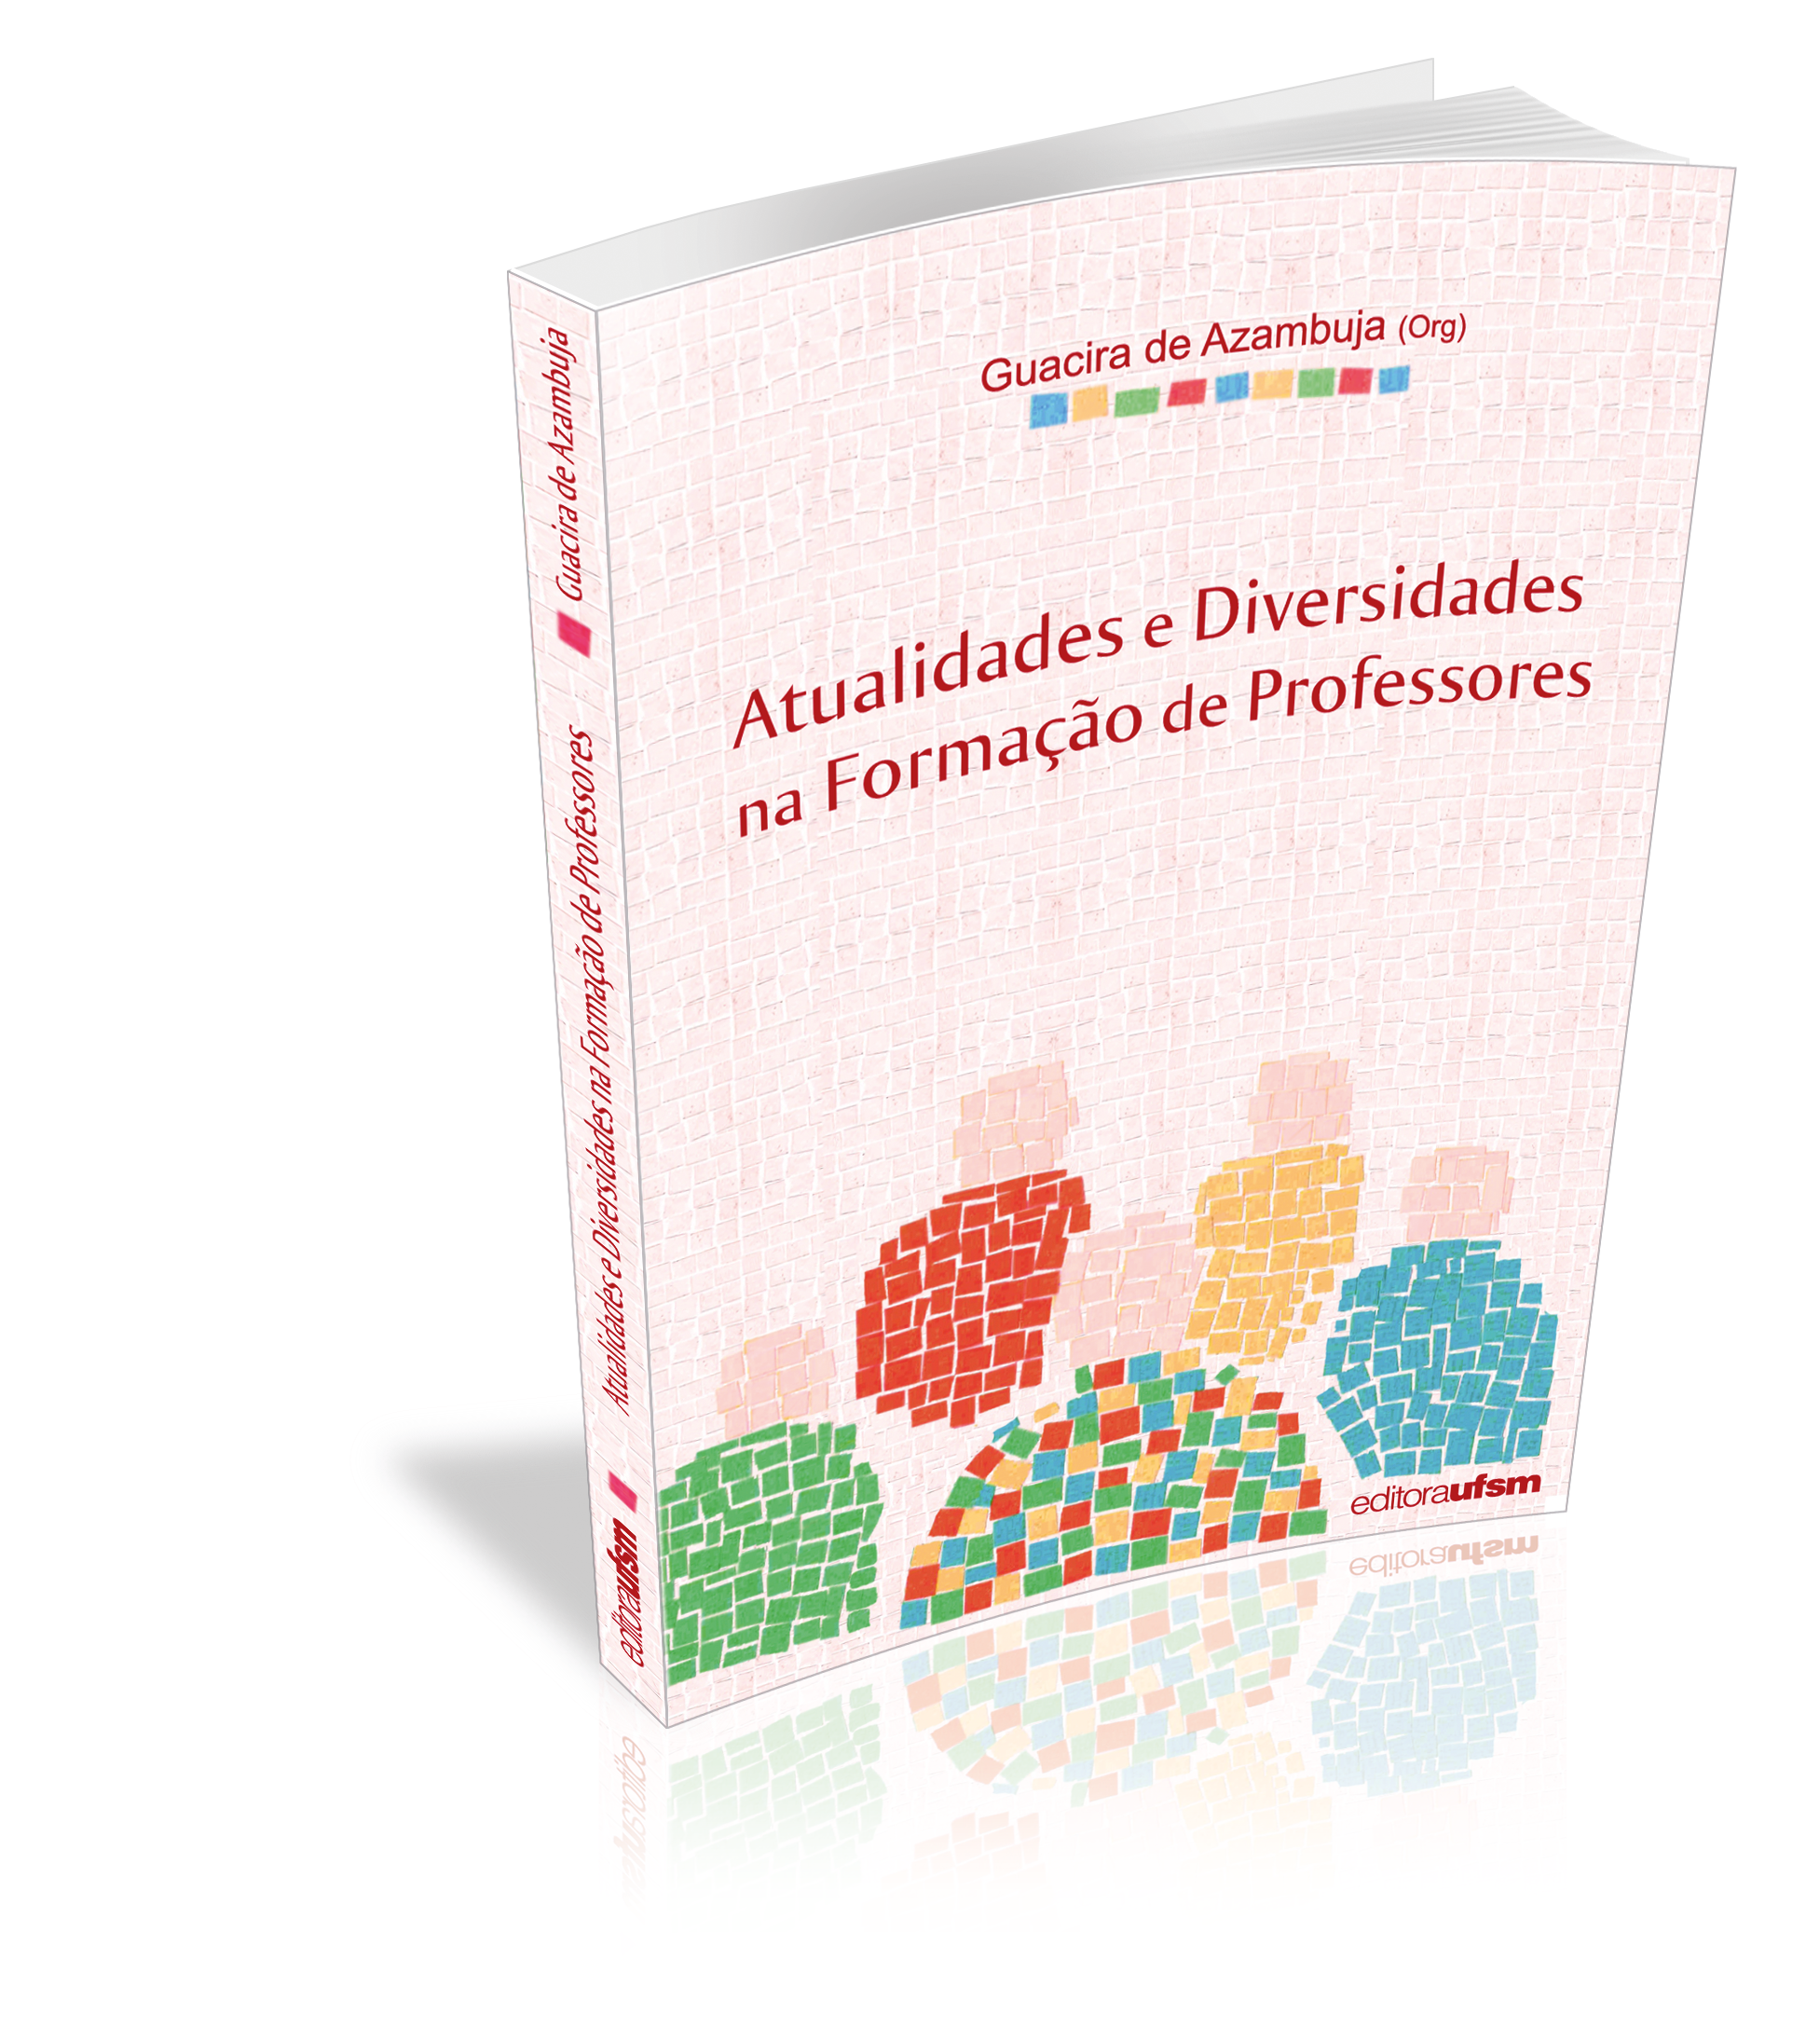 Capa do livro Atualidades e Diversidades na Formação de Professores